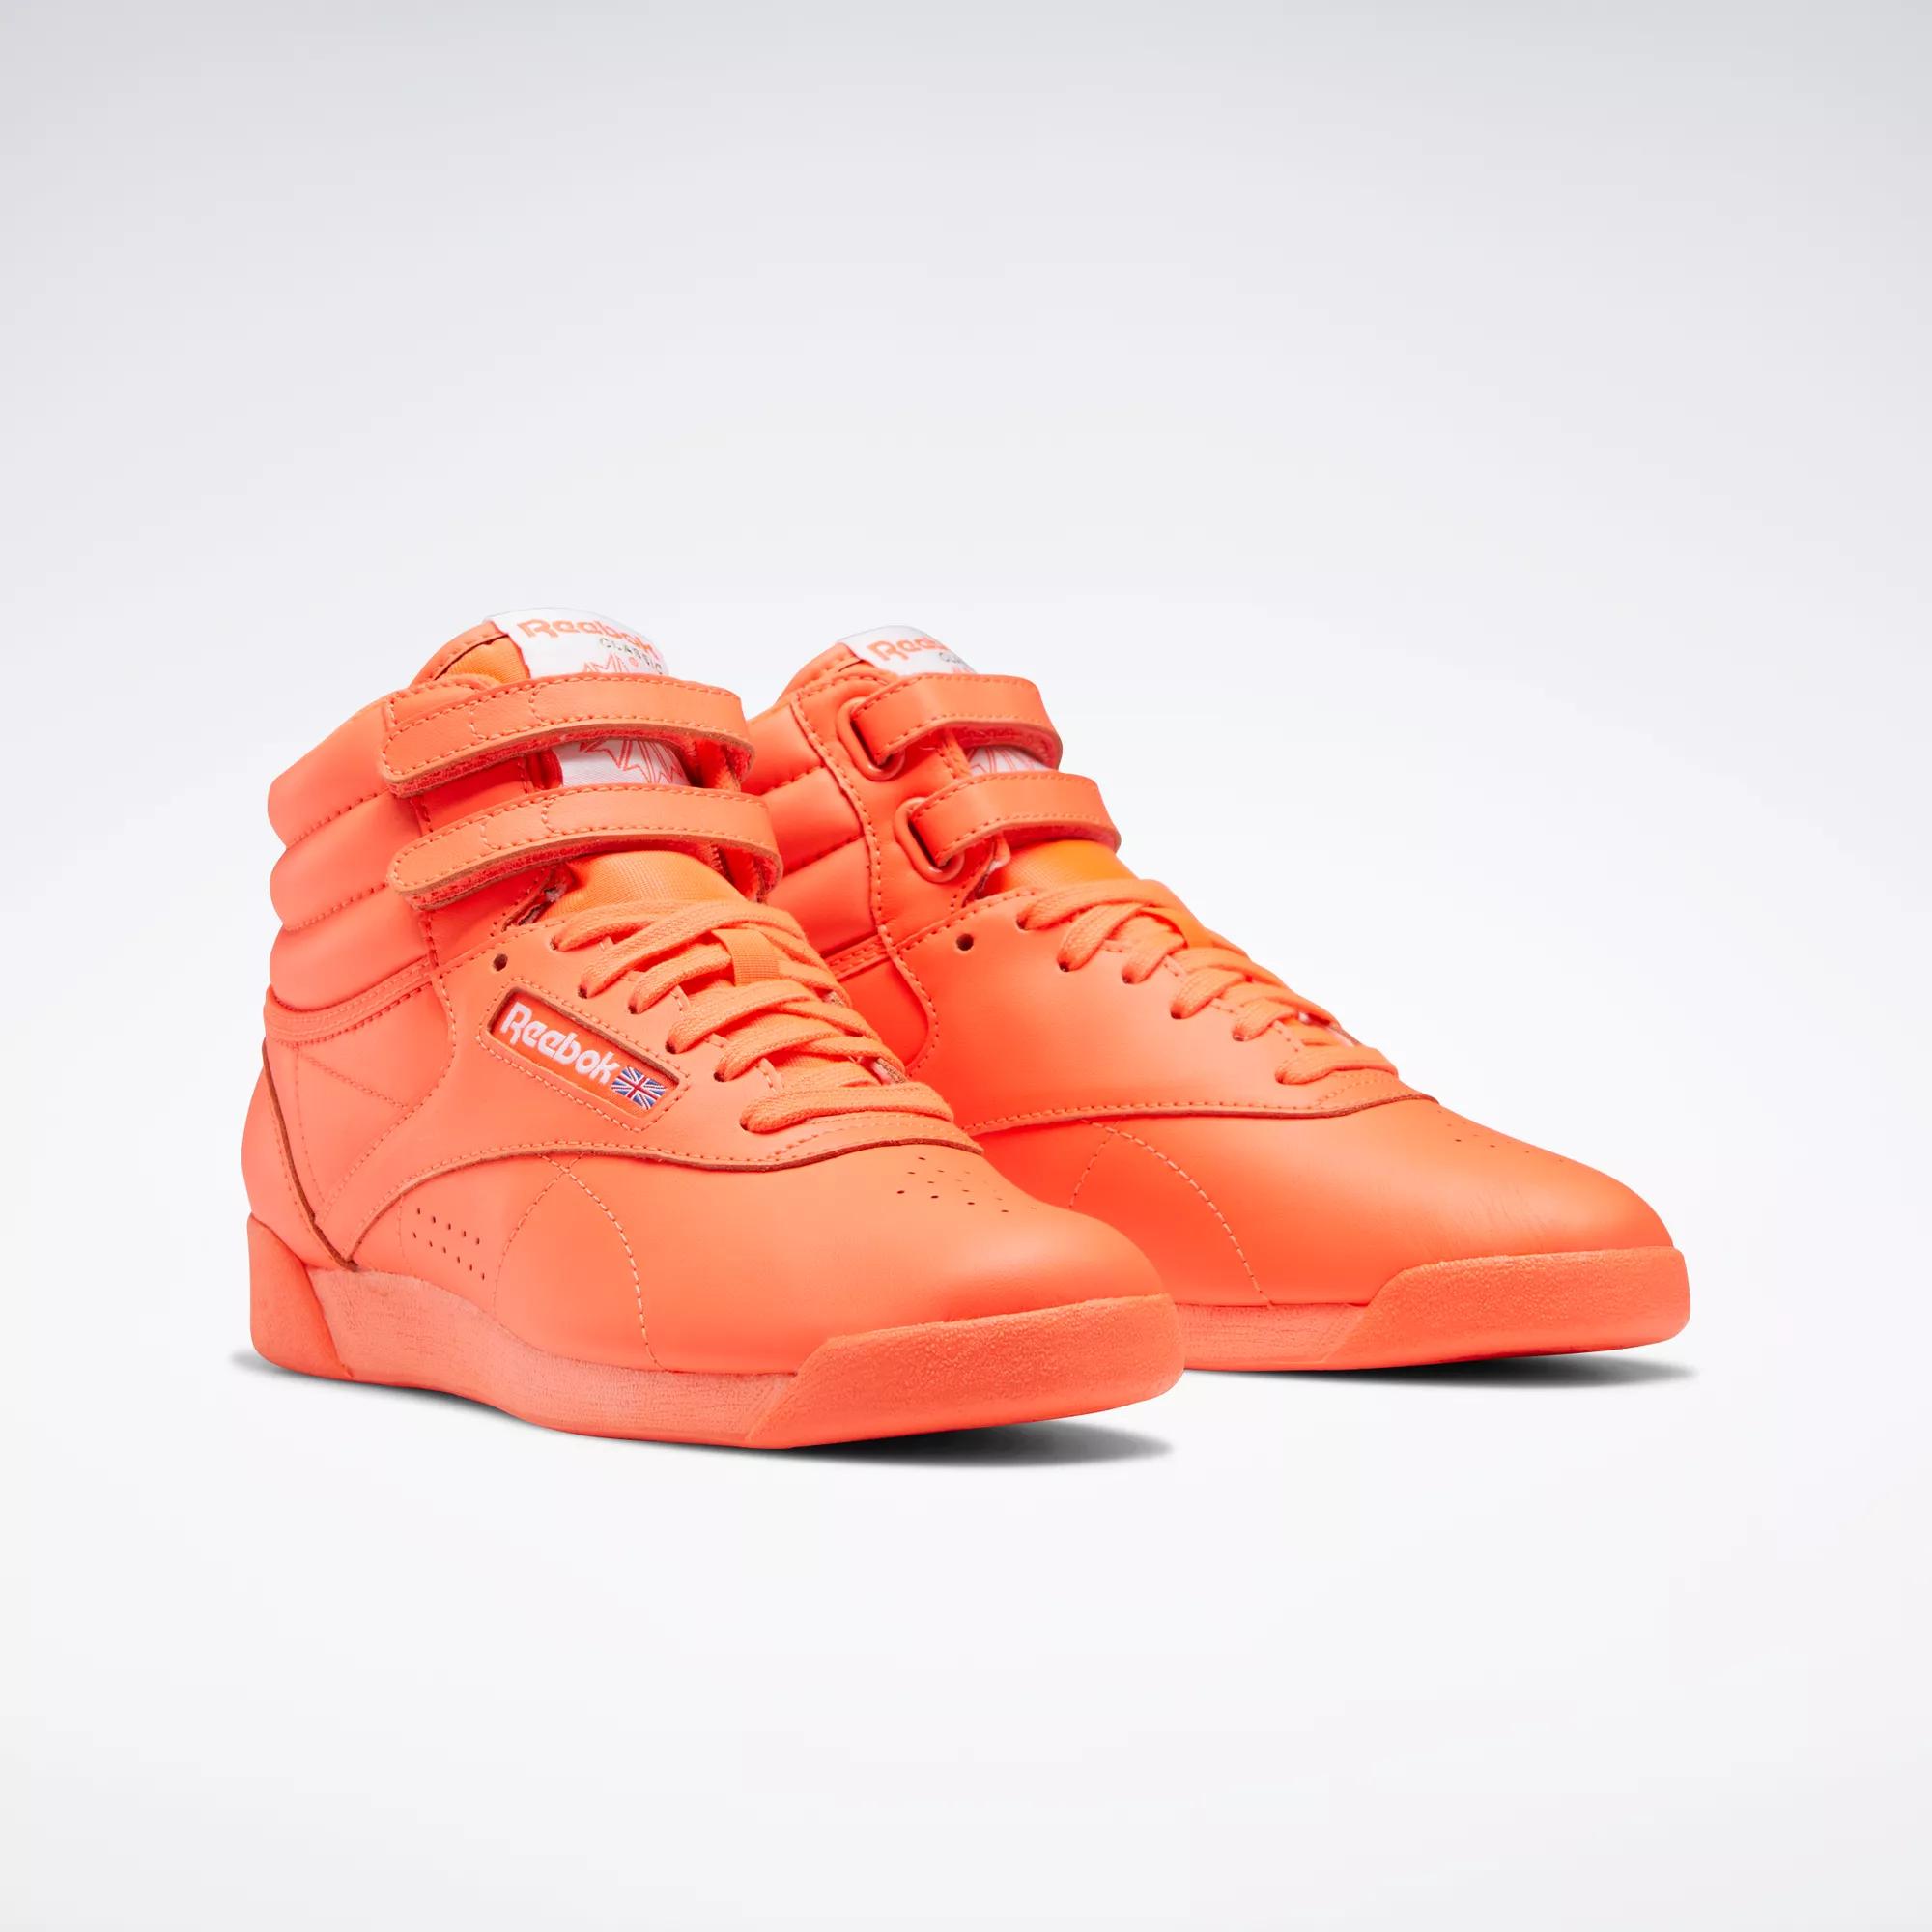 Freestyle Hi Women's Shoes - Orange Flare / Orange Flare / Ftwr White |  Reebok